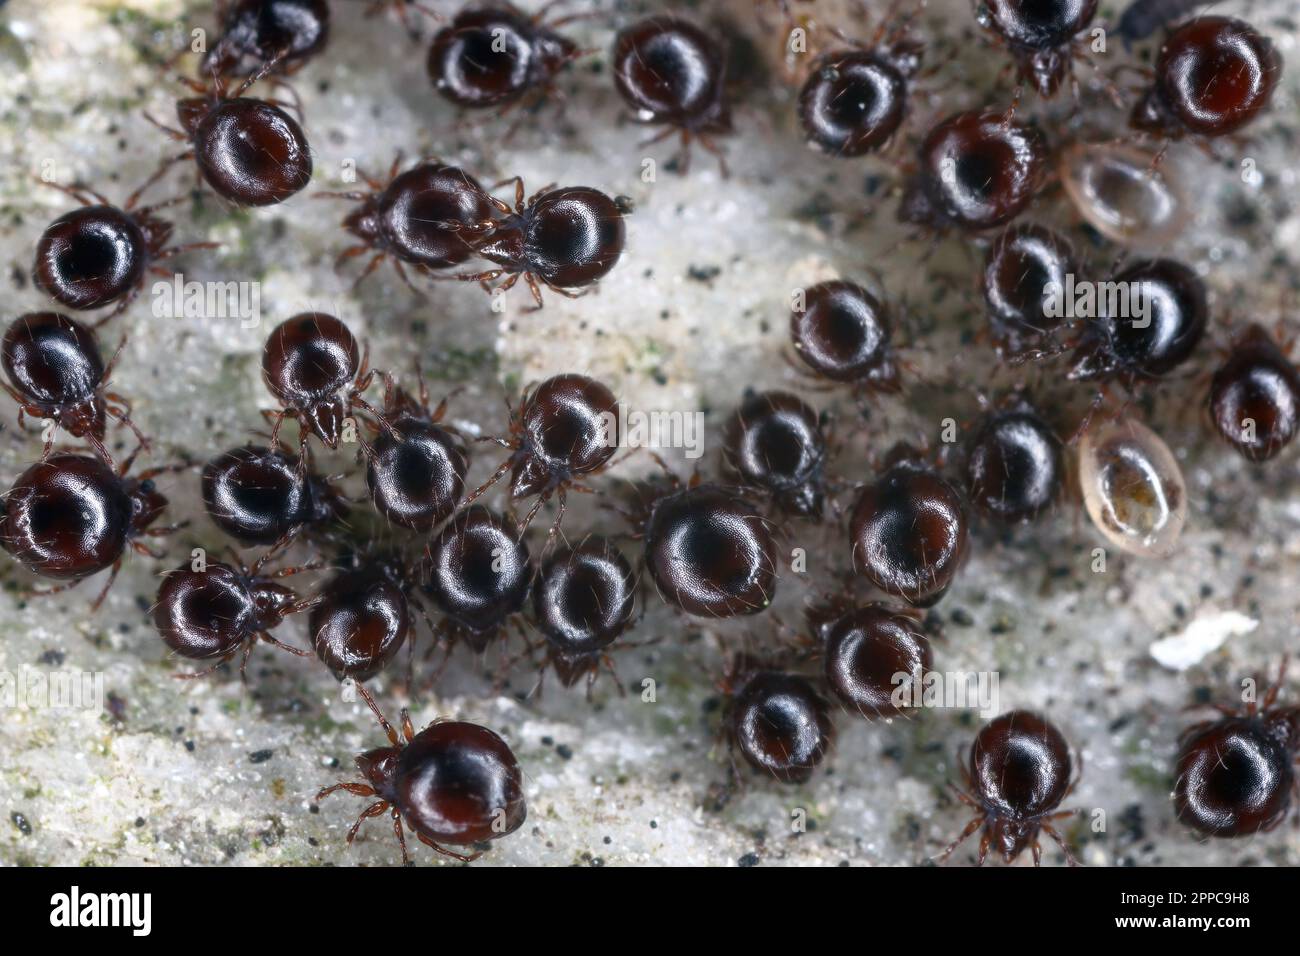 Nahaufnahme von Käfermilben, auch als Orbatidmilben bekannt. Eine Gruppe Arachniden unter einem Stein. Stockfoto